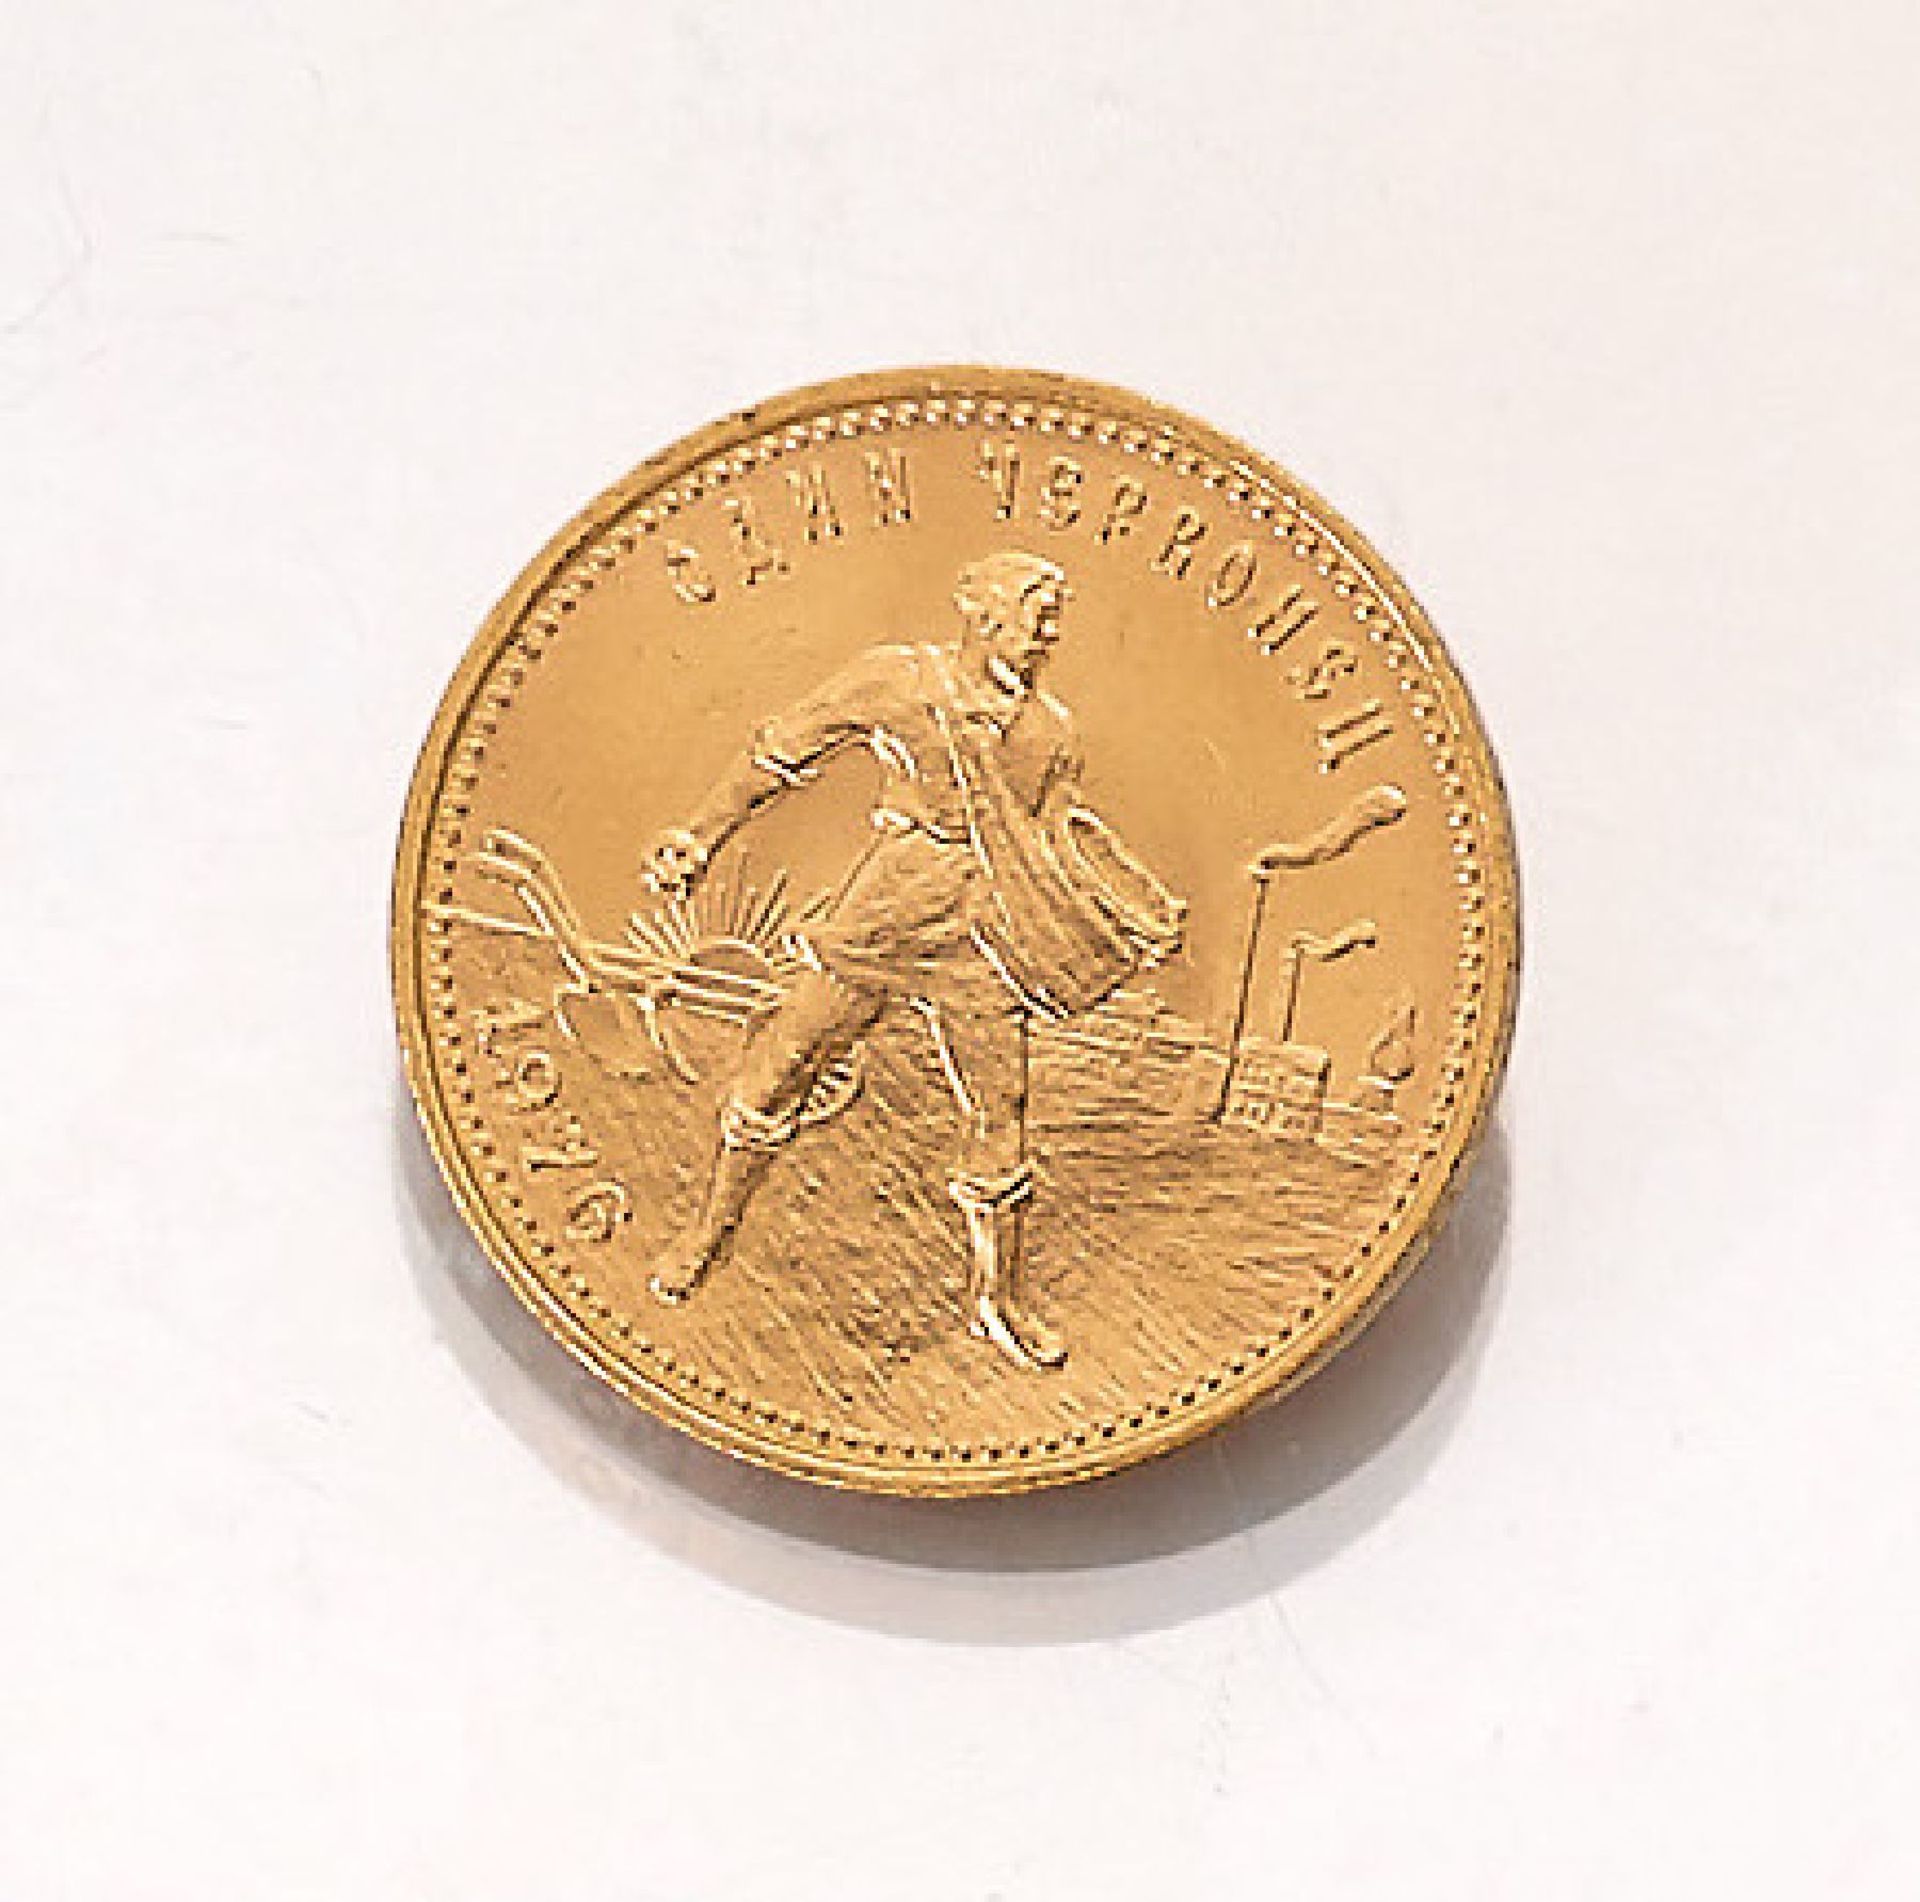 Goldmünze, 10 Rubel, 1 Tscherwonez, Russ- land, 1976Gold coin, 10 ruble , 1 Tscherwonez, Russia,